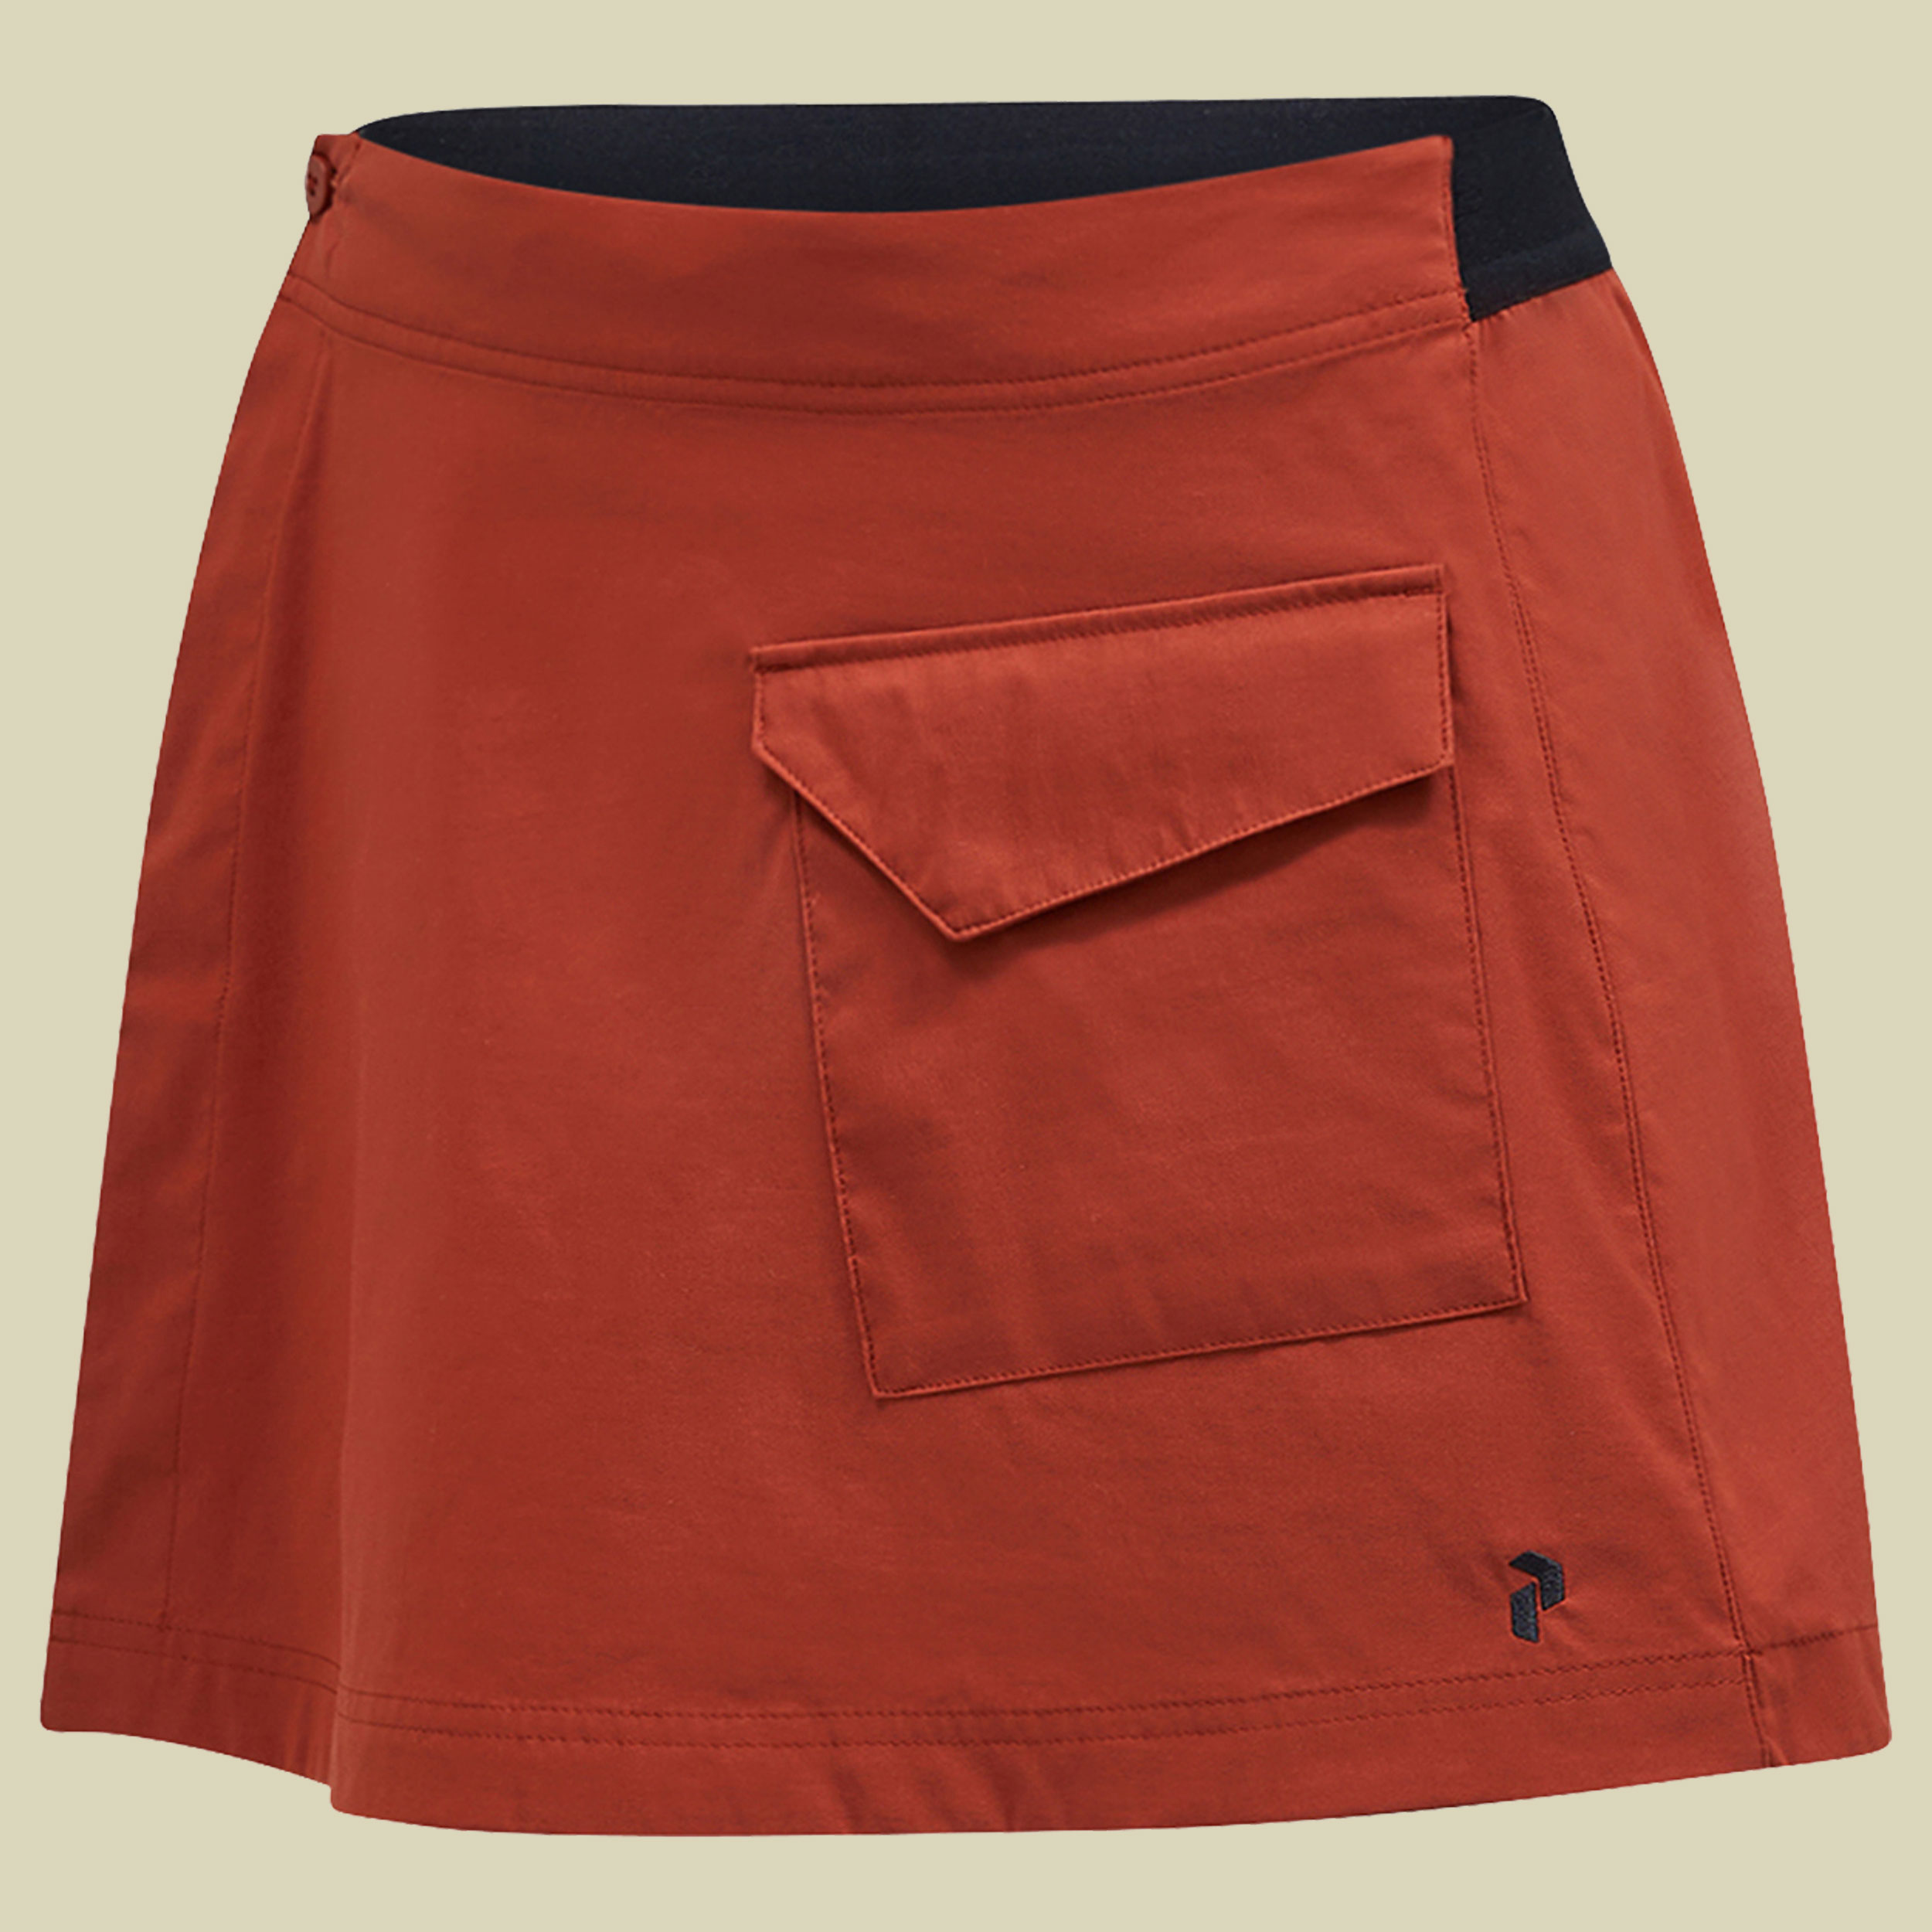 Player Pocket Skirt Women S braun - spiced